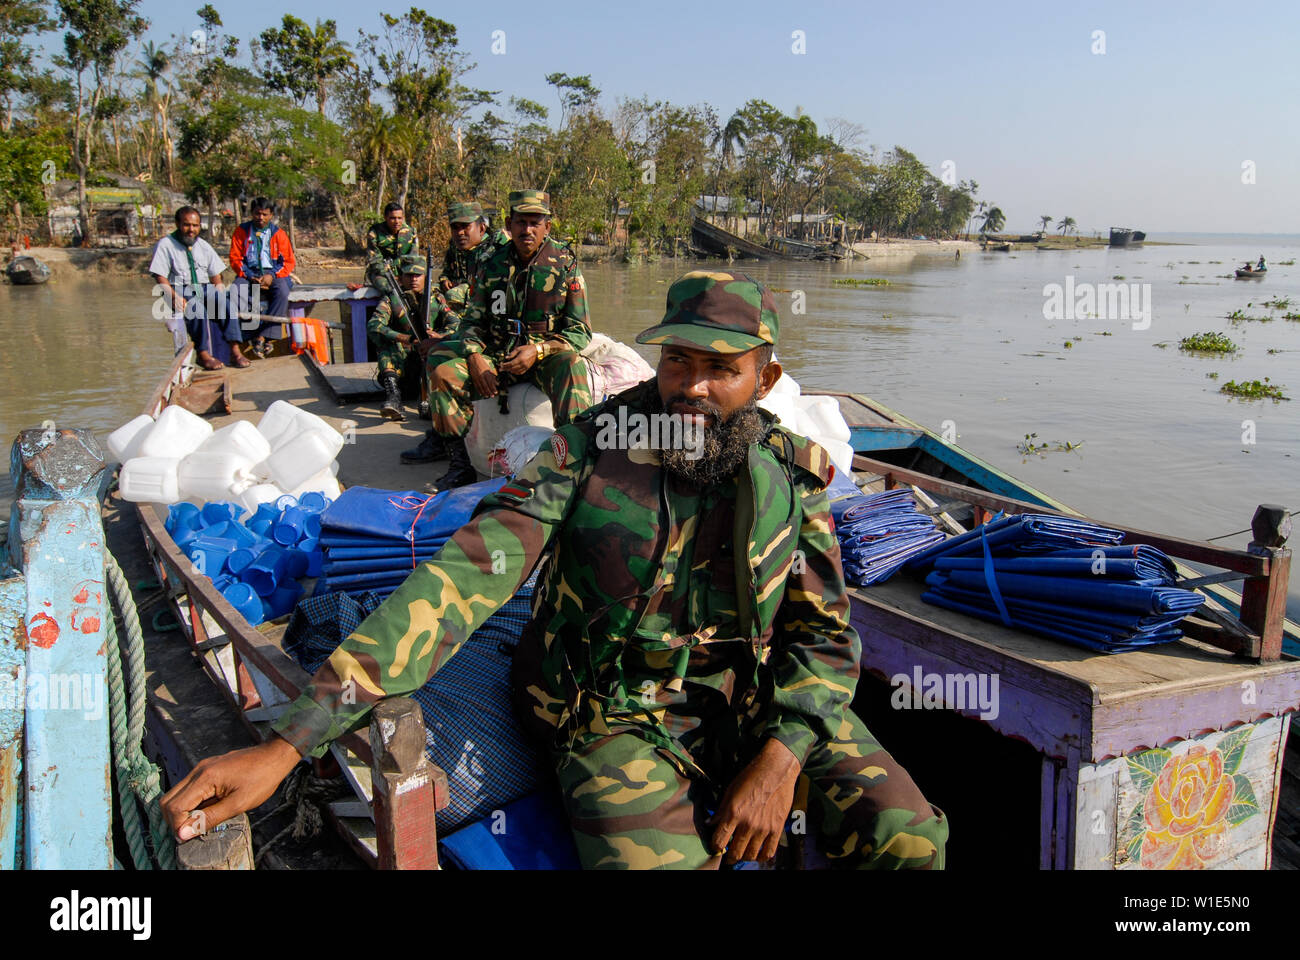 Bangladesch Zyklon Sidr und Flut zerstören Dörfer in Southkhali im Distrikt Bagerhat, Armee verteilt Hilfsgüter mit dem Boot/BANGLADESCH, der Wirbelsturm Zyklon Sidr und eine Sturmflut zerstoeren Doerfer im Kuestengebiet von Southkhali, Armee verteilt Hilsgueter pro Boot Stockfoto